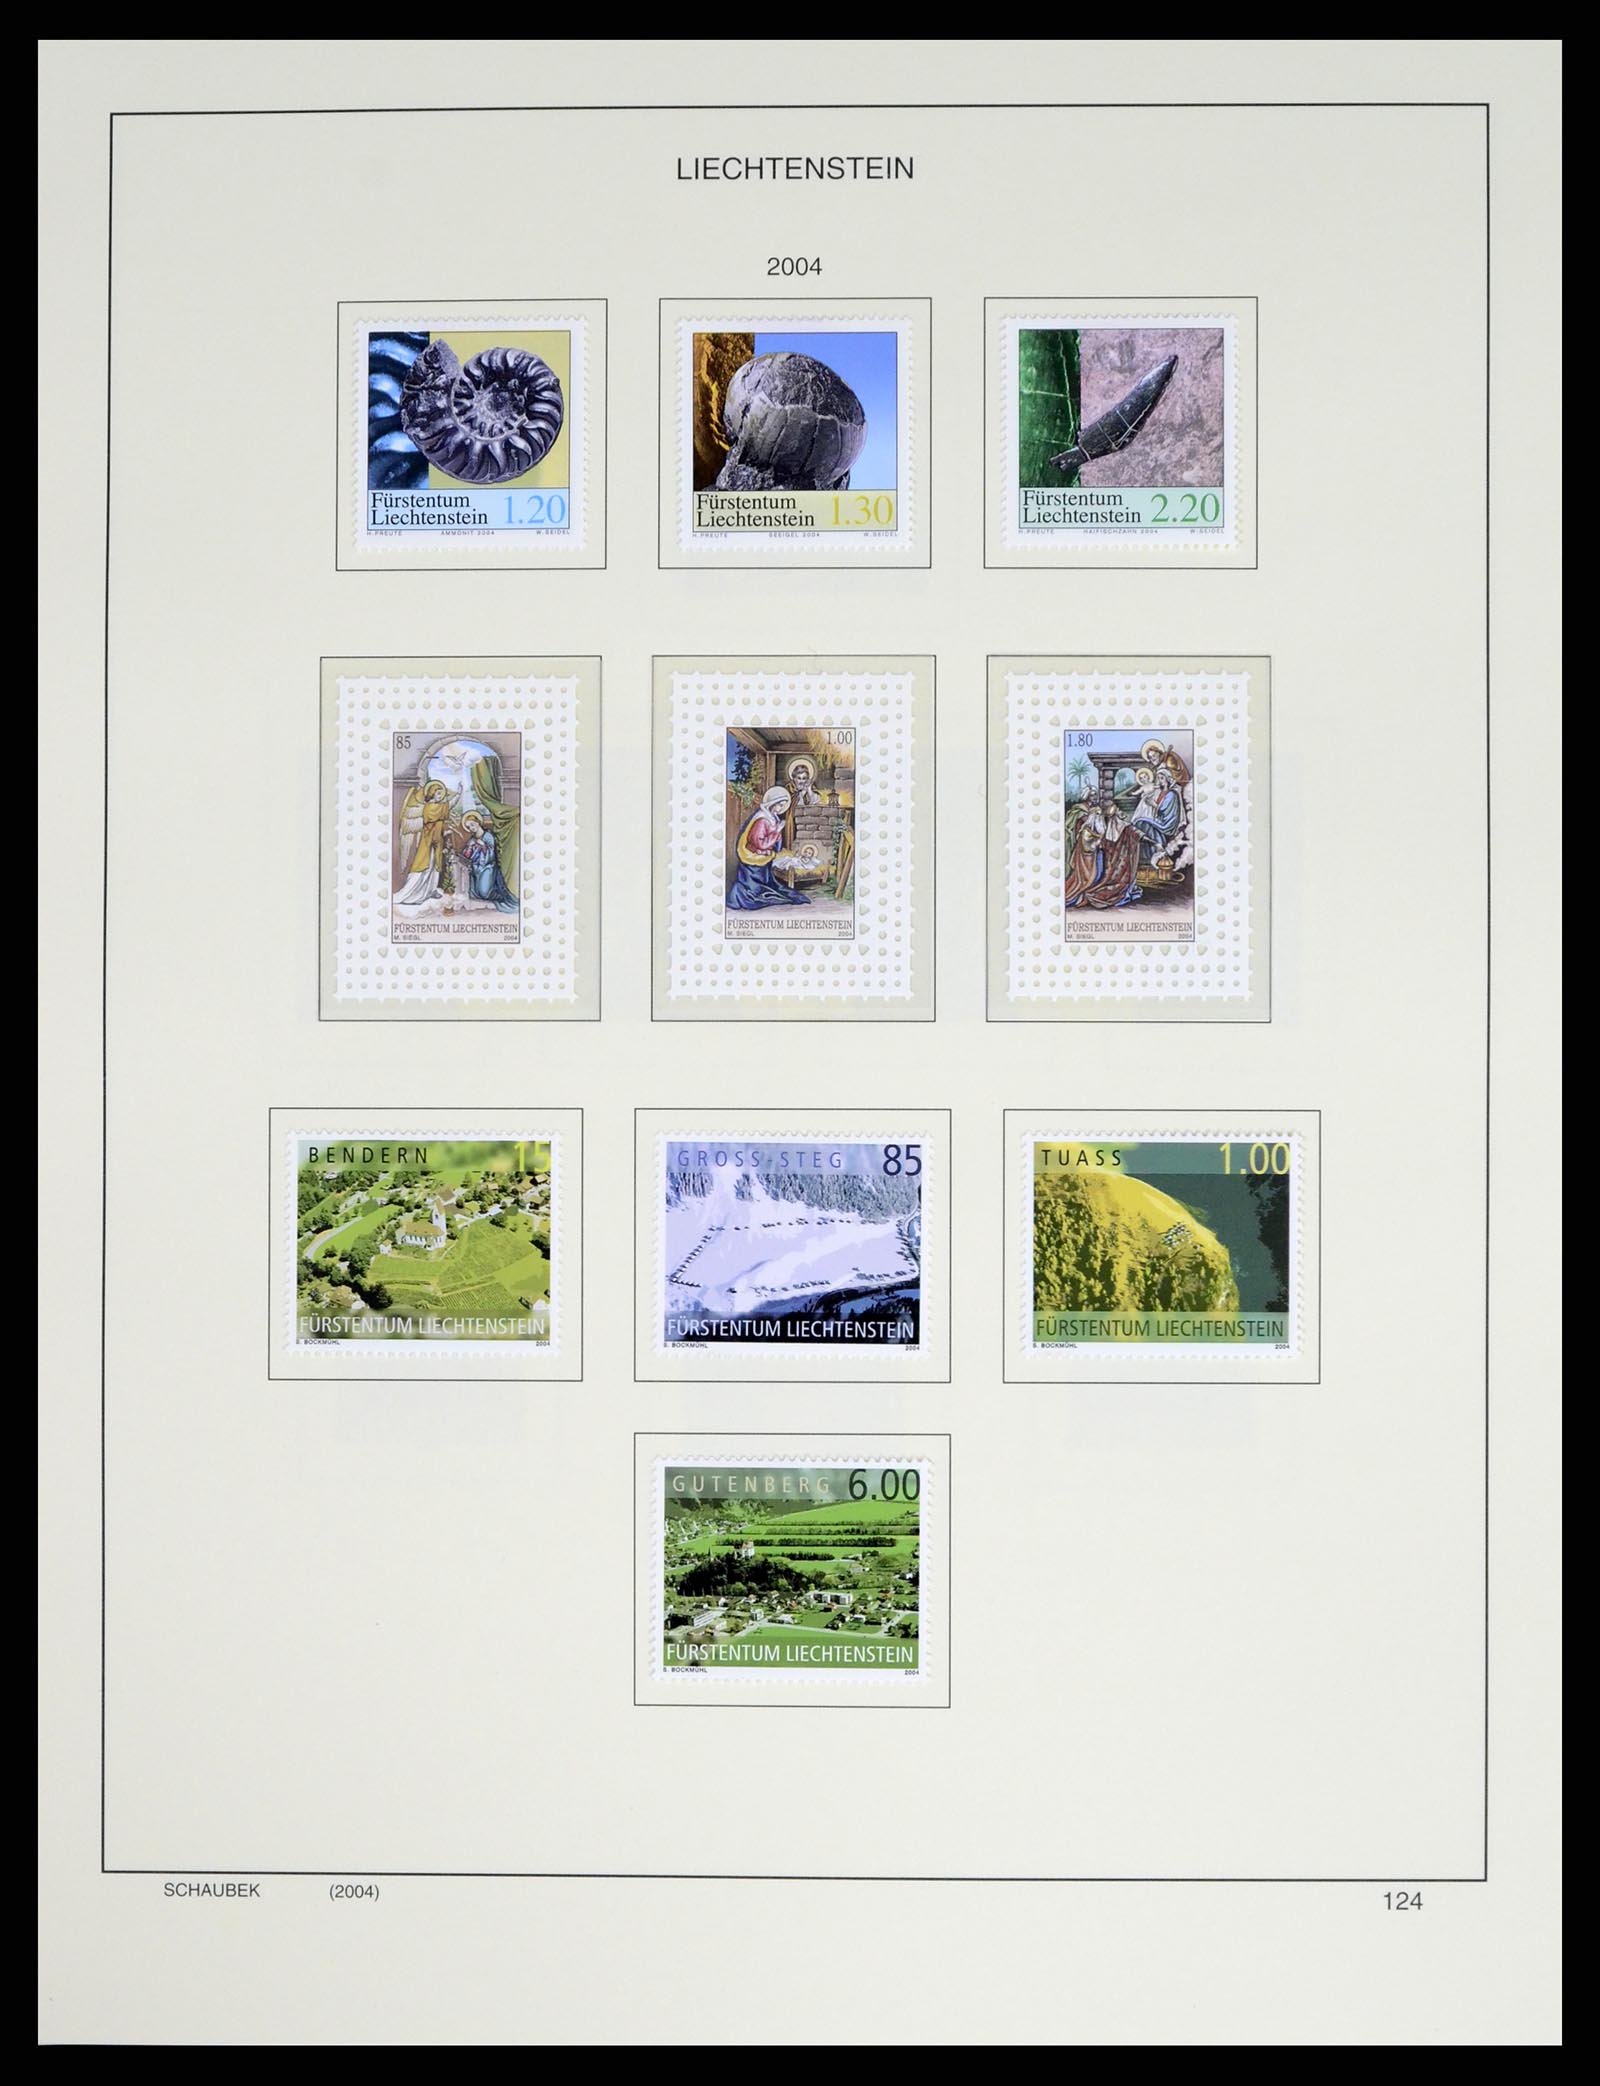 37547 147 - Stamp collection 37547 Liechtenstein 1912-2011.